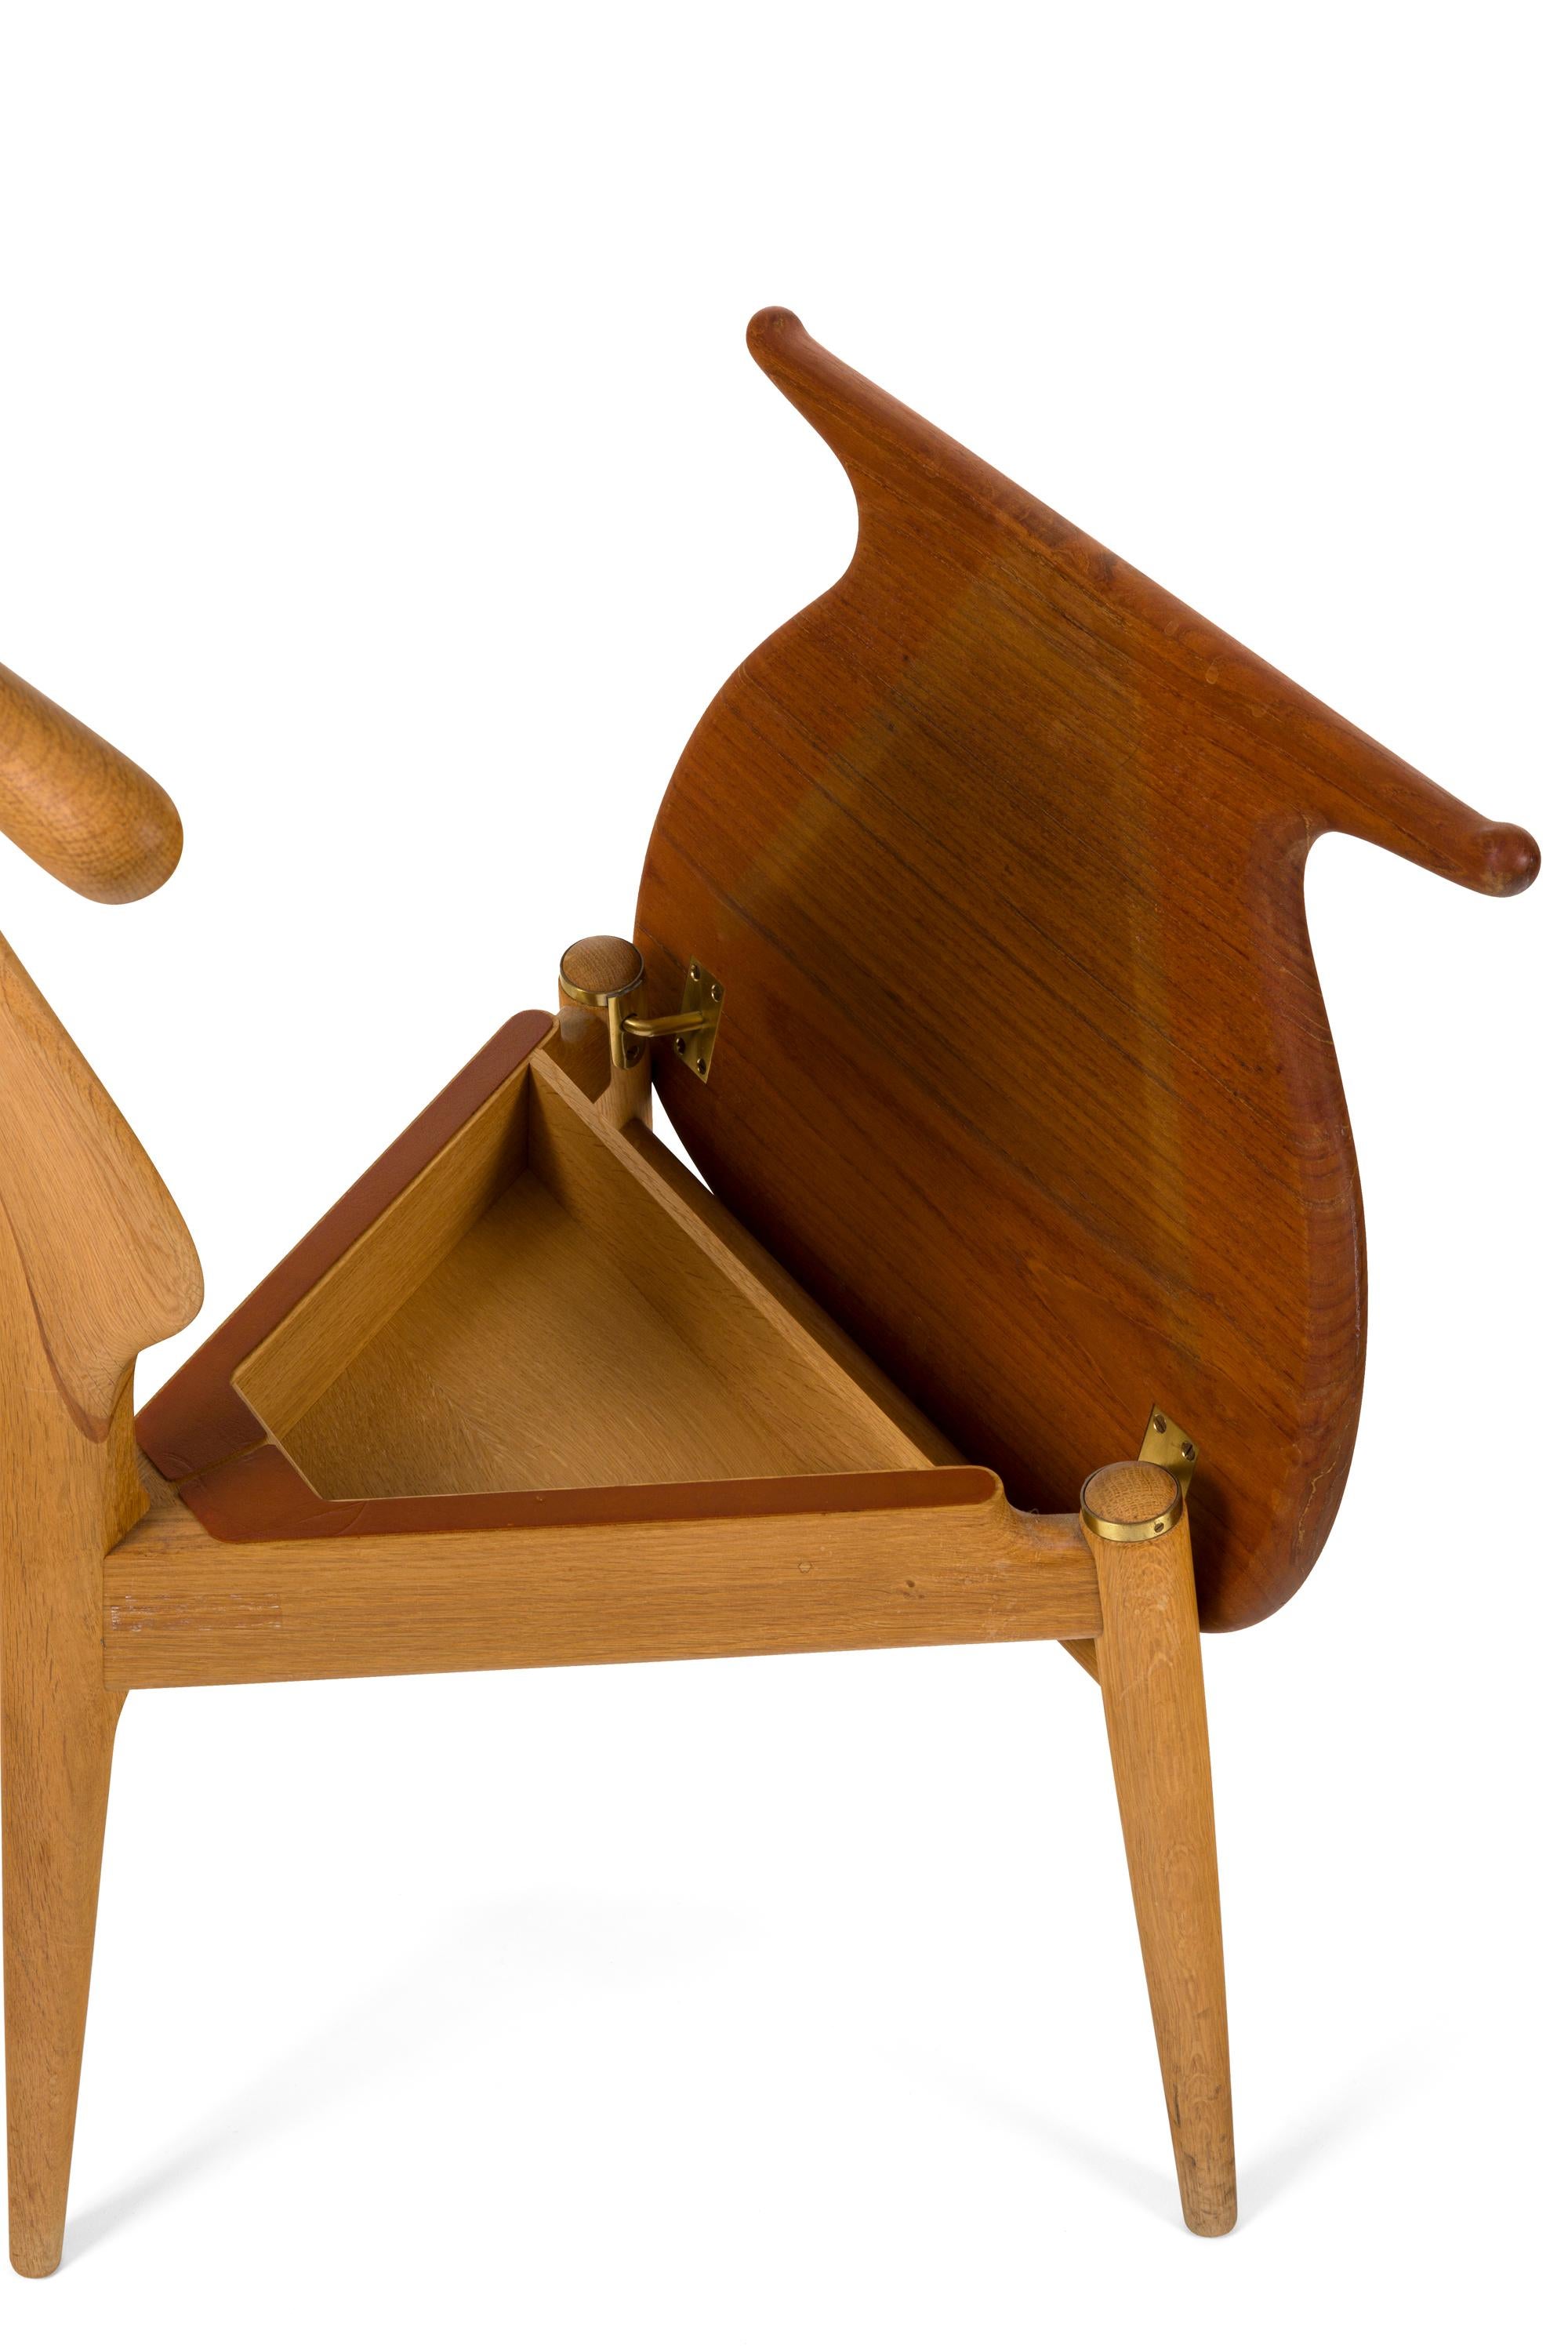 Scandinavian Modern Hans Wegner Teak Valet Chair by Johannes Hansen for Knoll, Denmark 1960s